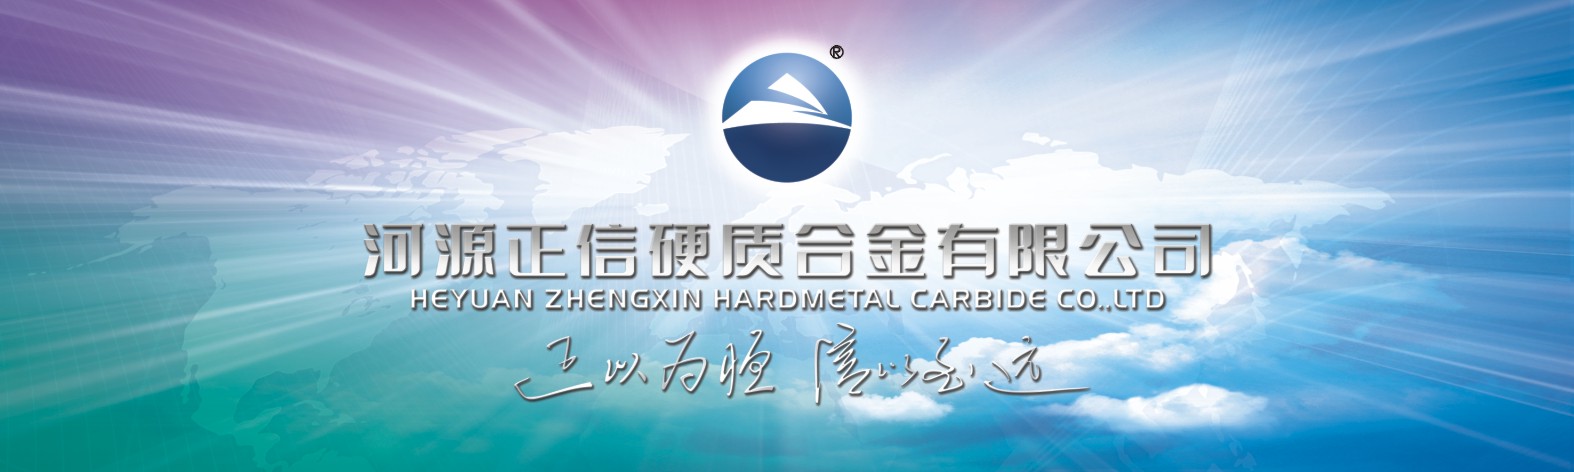 HeYuan  ZhengXin  Hardmetal  Carbide  Pte  Limited  Company